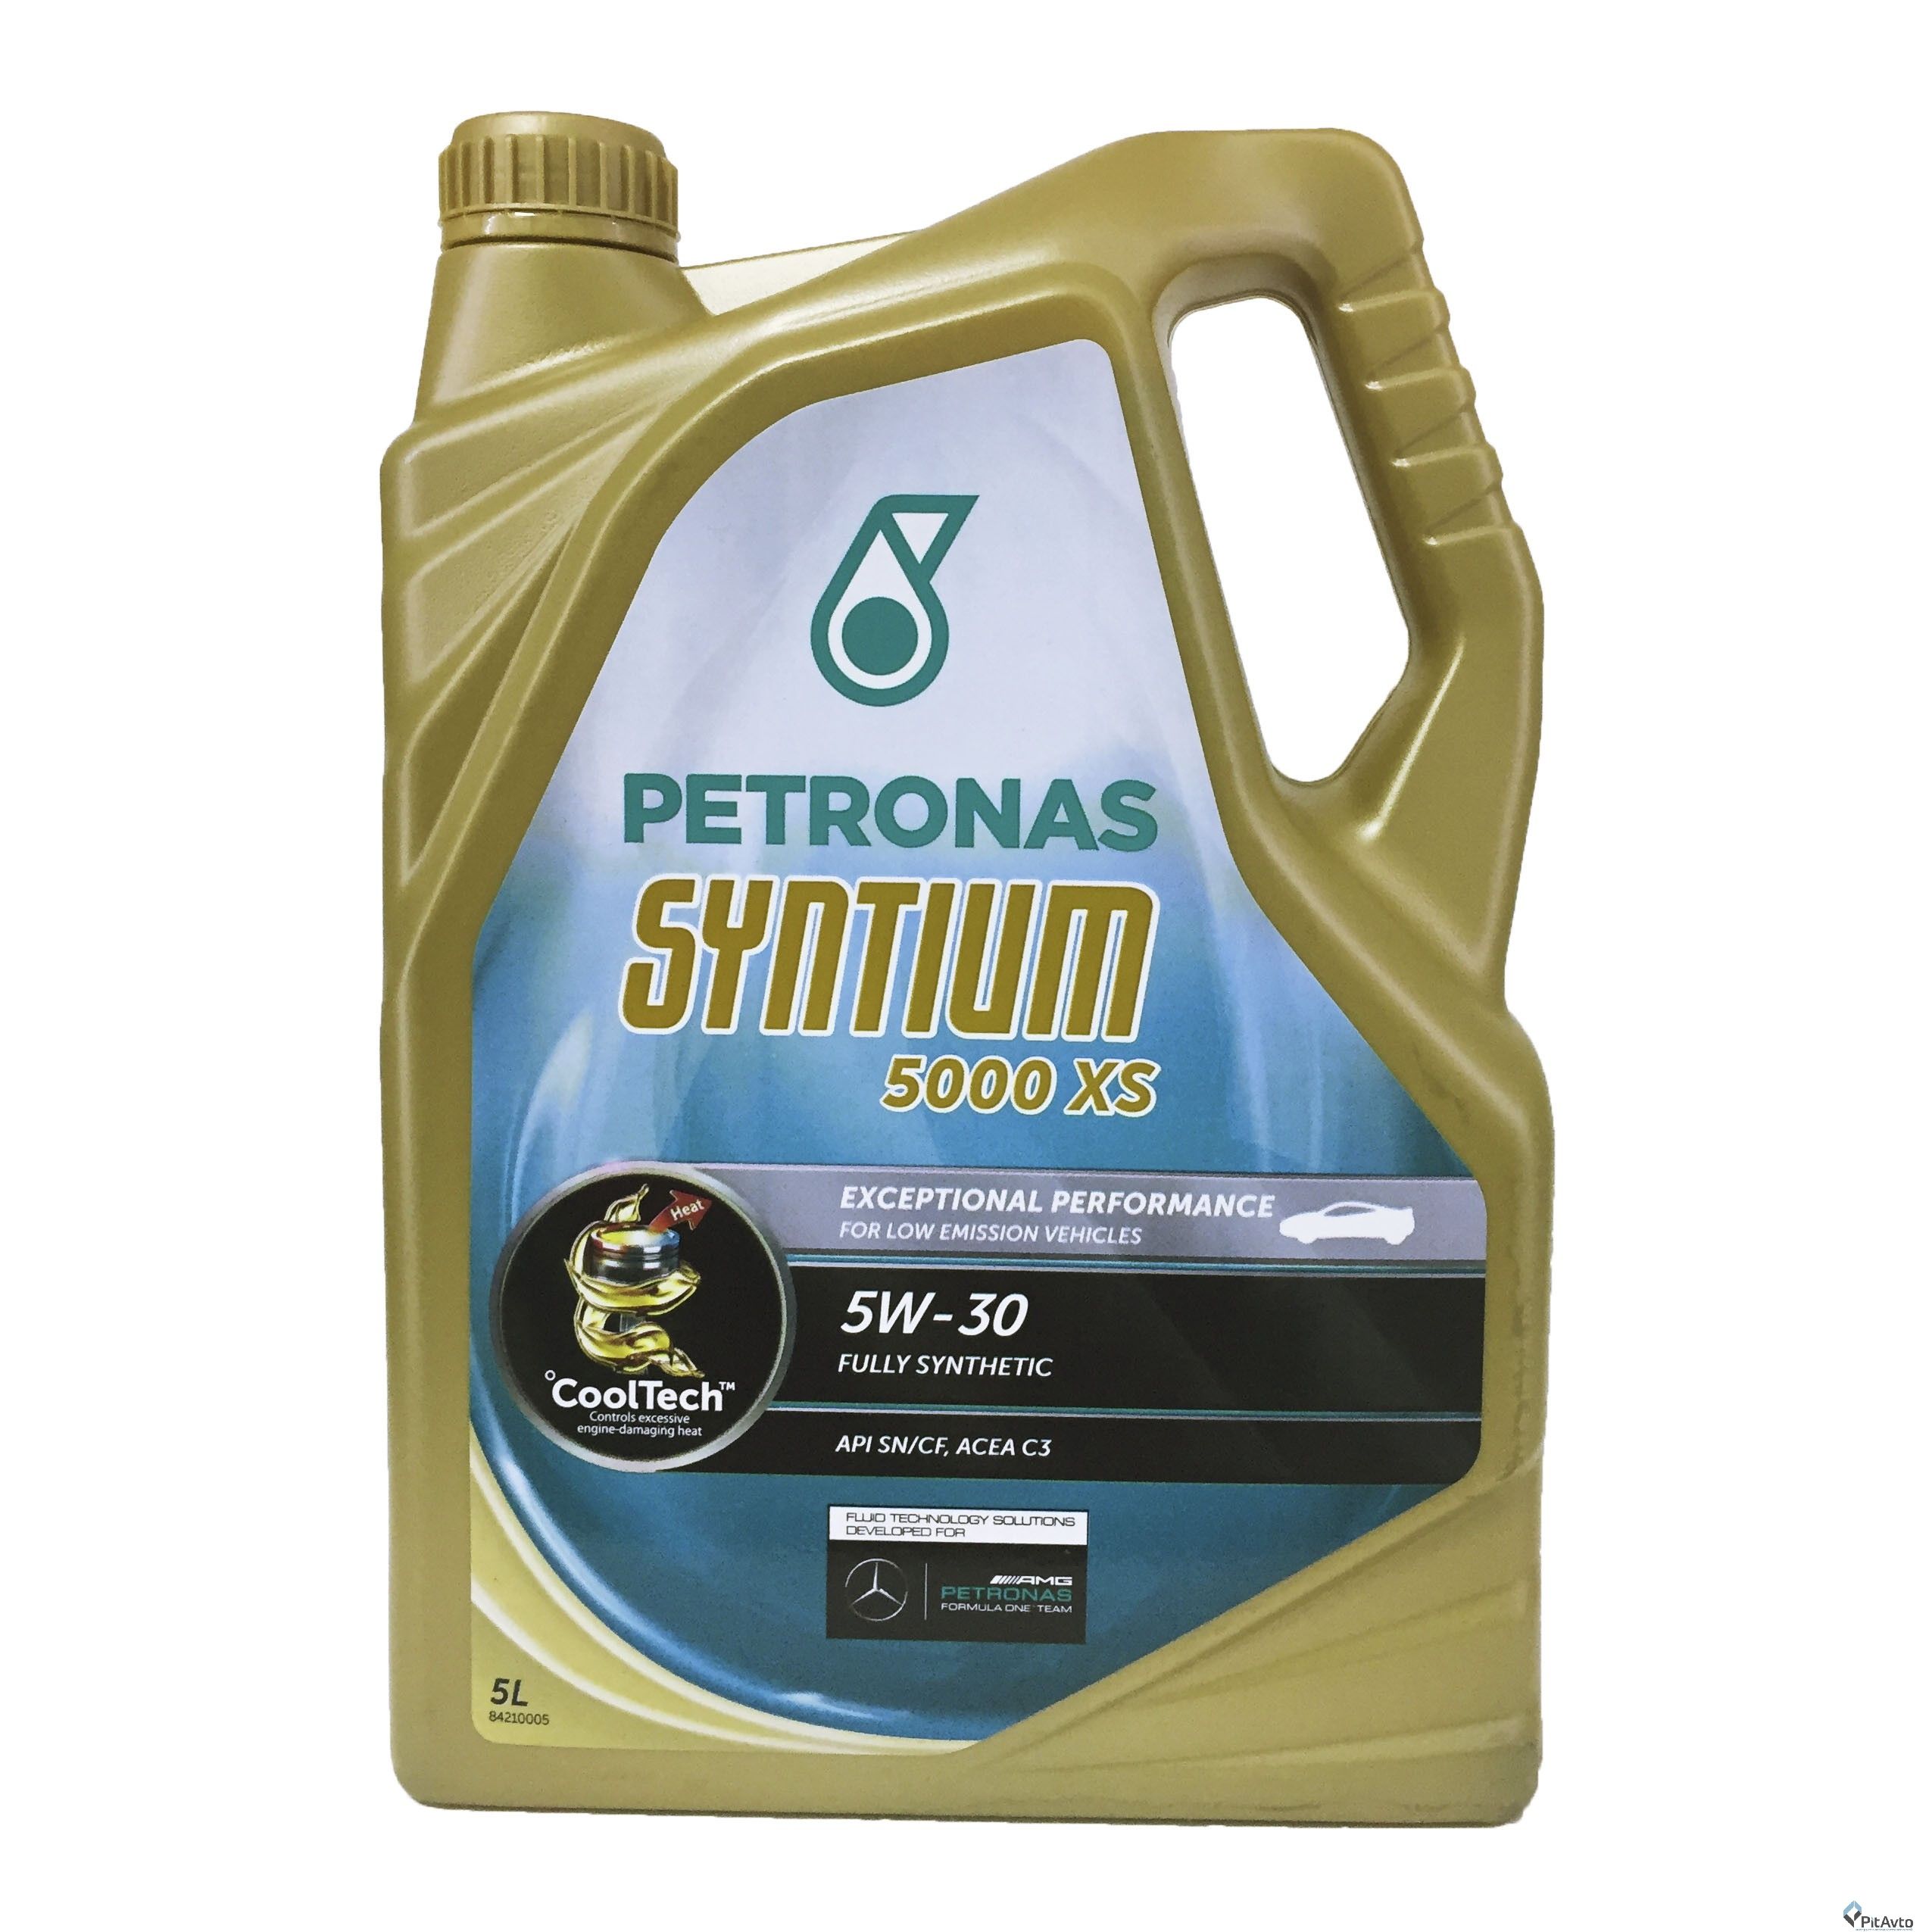 Petronas 5000 av. Syntium 5000 XS 5w30 5l. Petronas 5w-30 5000 XS 5l. Петронас Синтиум 5000 XS 5w30 5l. Petronas 5w30 DM.